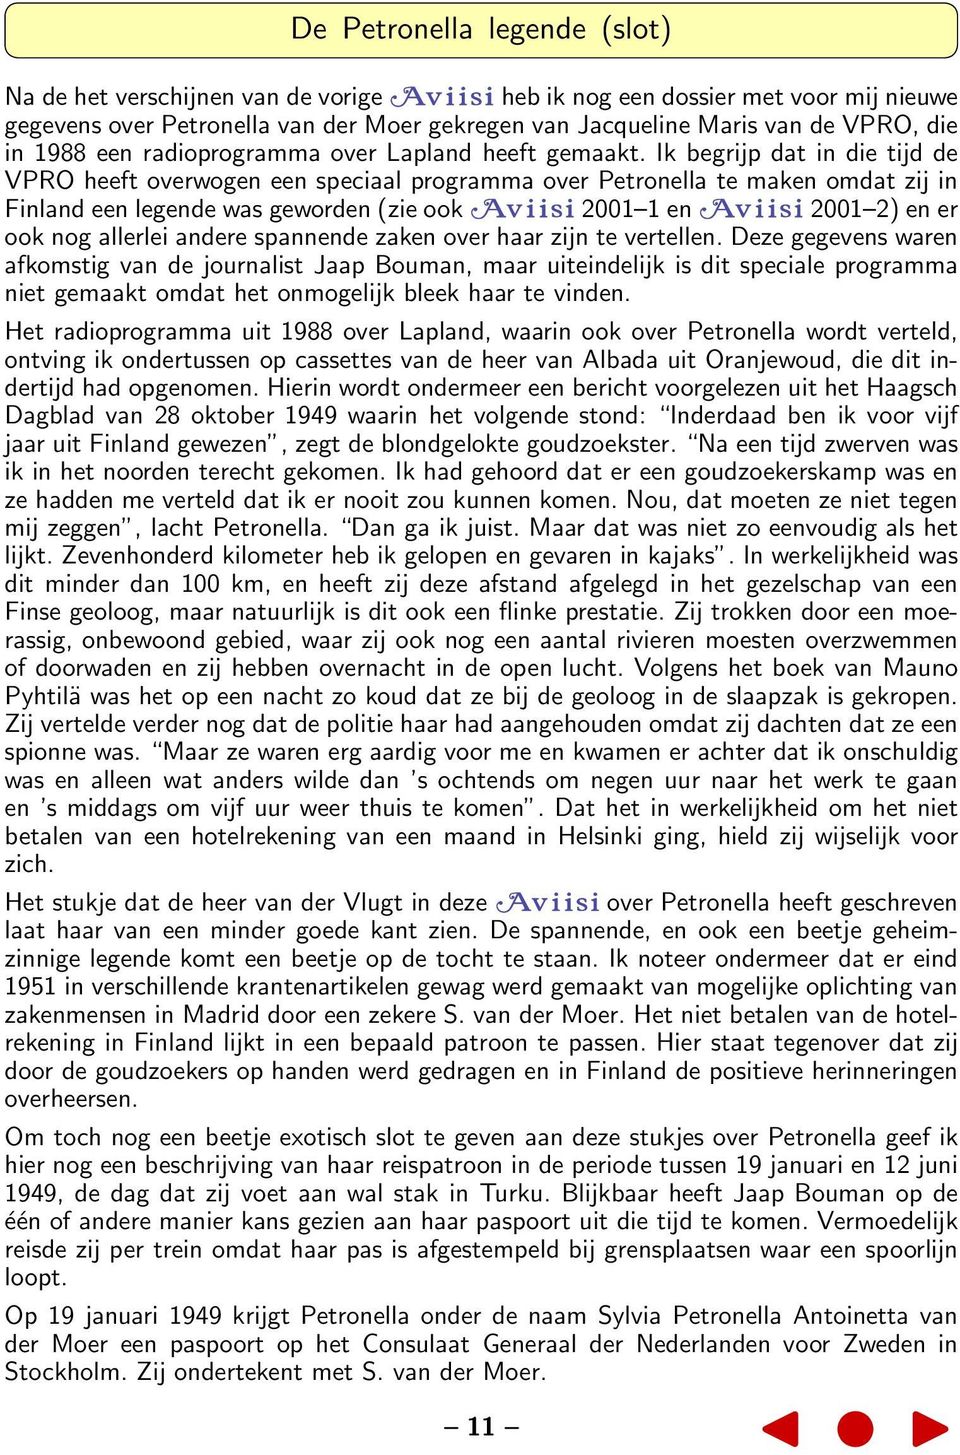 Ik begrijp dat in die tijd de VPRO heeft overwogen een speciaal programma over Petronella te maken omdat zij in Finland een legende was geworden (zie ook 2001 1 en 2001 2) en er ook nog allerlei